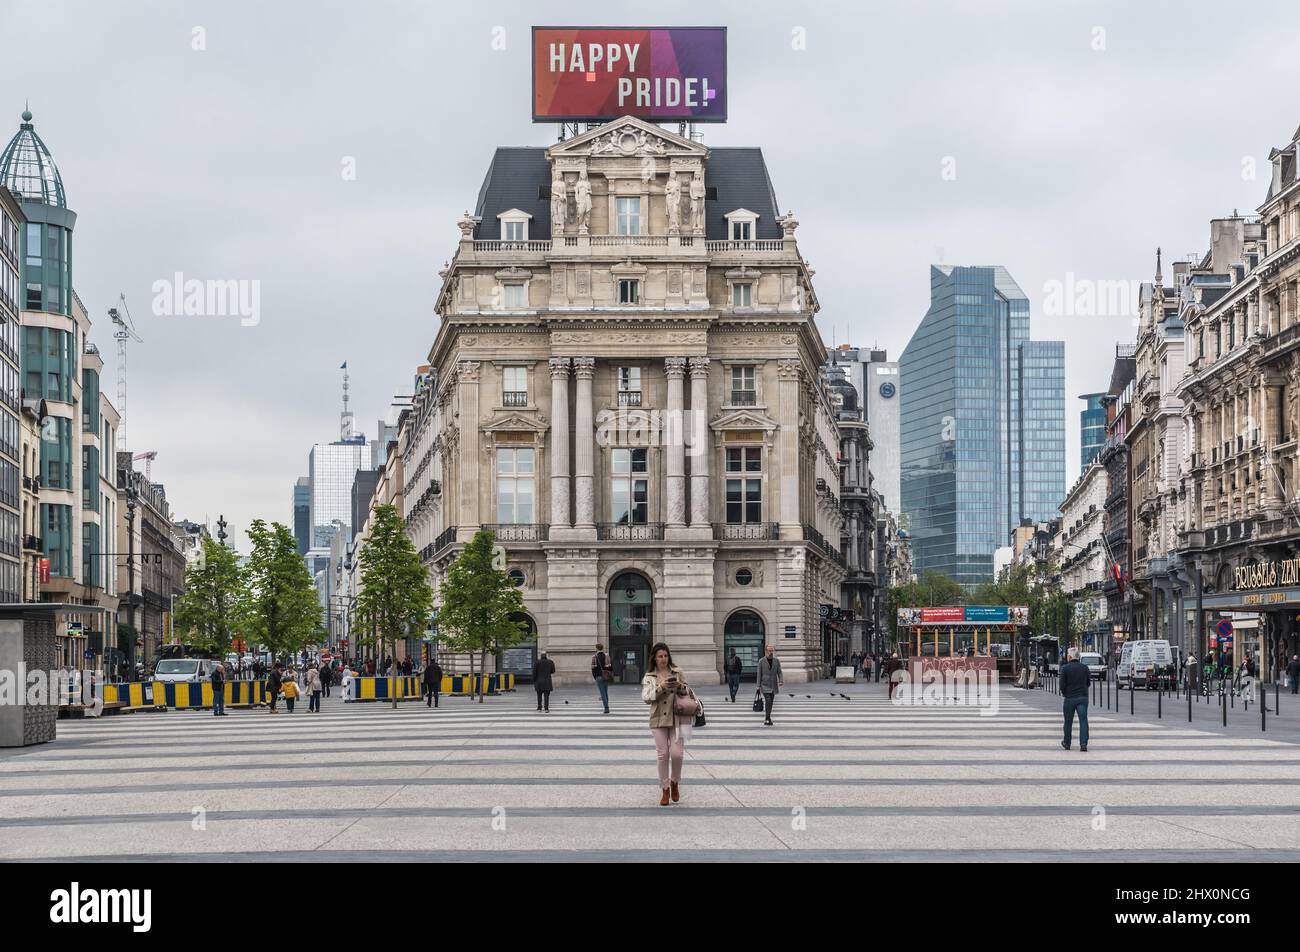 Vieille ville de Bruxelles - Belgique - 05 17 2019 - personnes qui se promo au-dessus de la place piétonne rénovée de Brouckère avec ses façades néo-classiques et sa fierté gay Banque D'Images